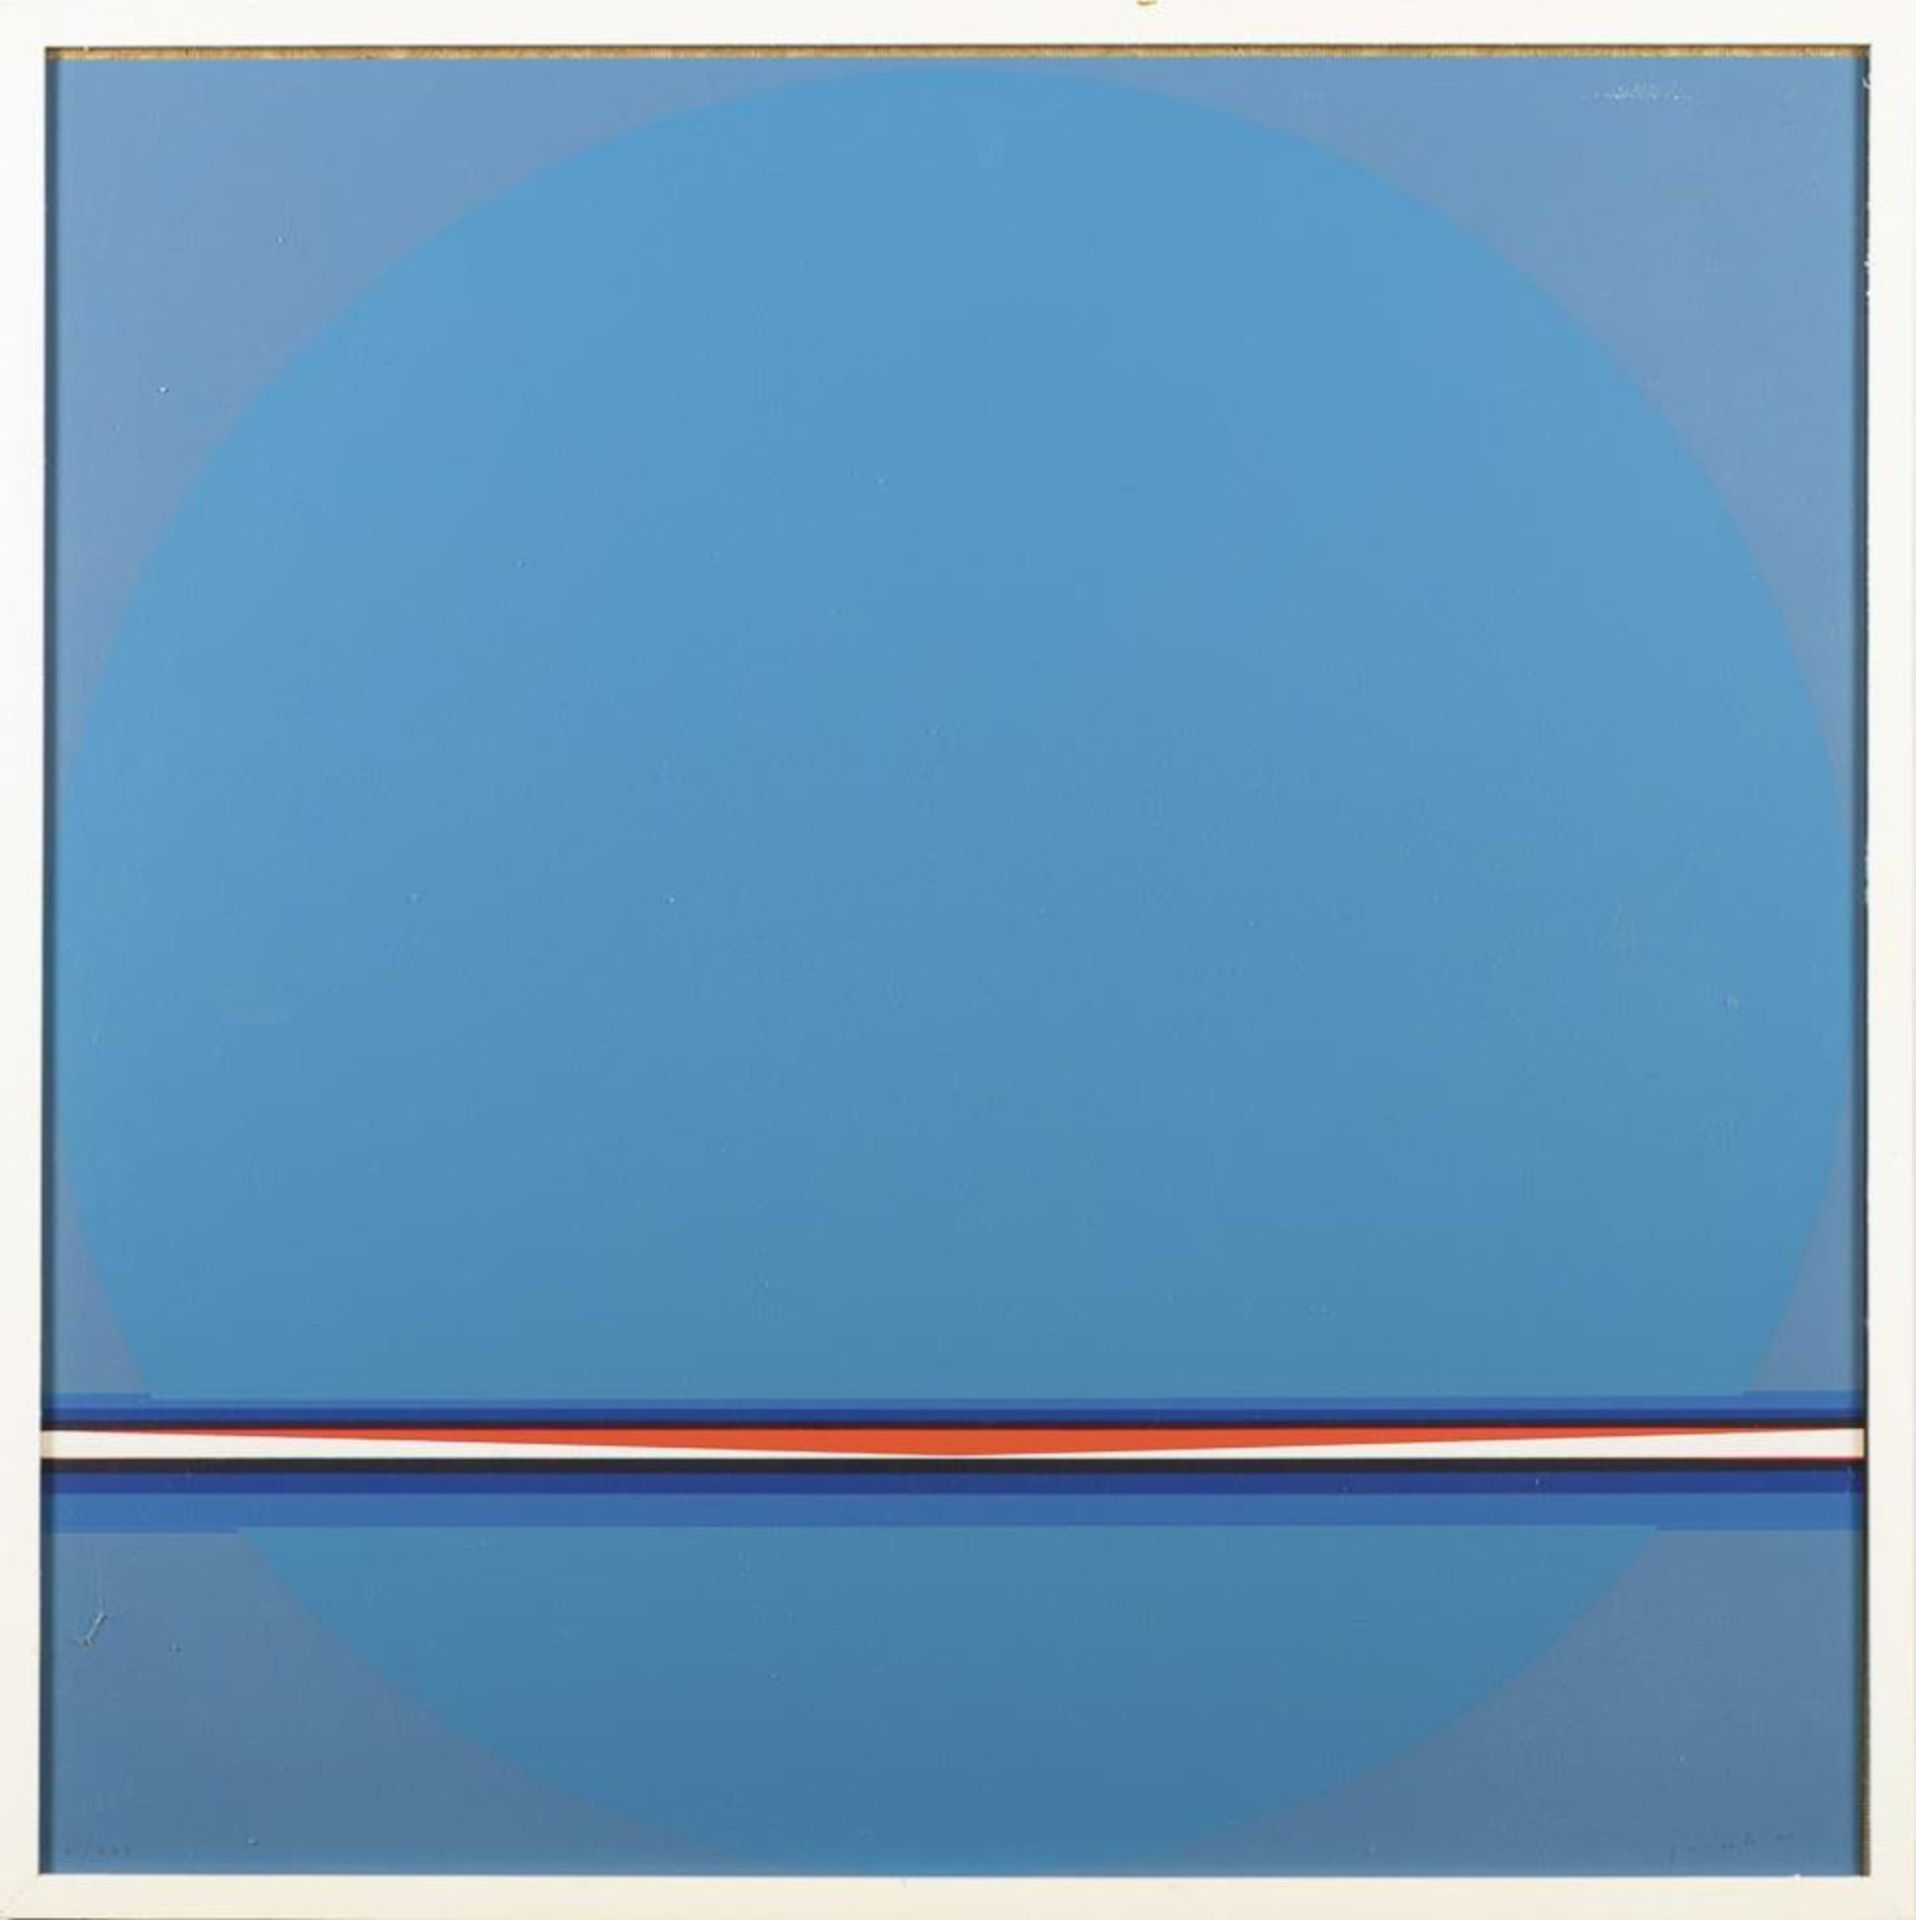 QUINTE, Lothar (1923 Neiße - 2000 Wintzenbach). 2 Werke "Blau-horizontal" und "Orange-horizontal". - Bild 3 aus 3